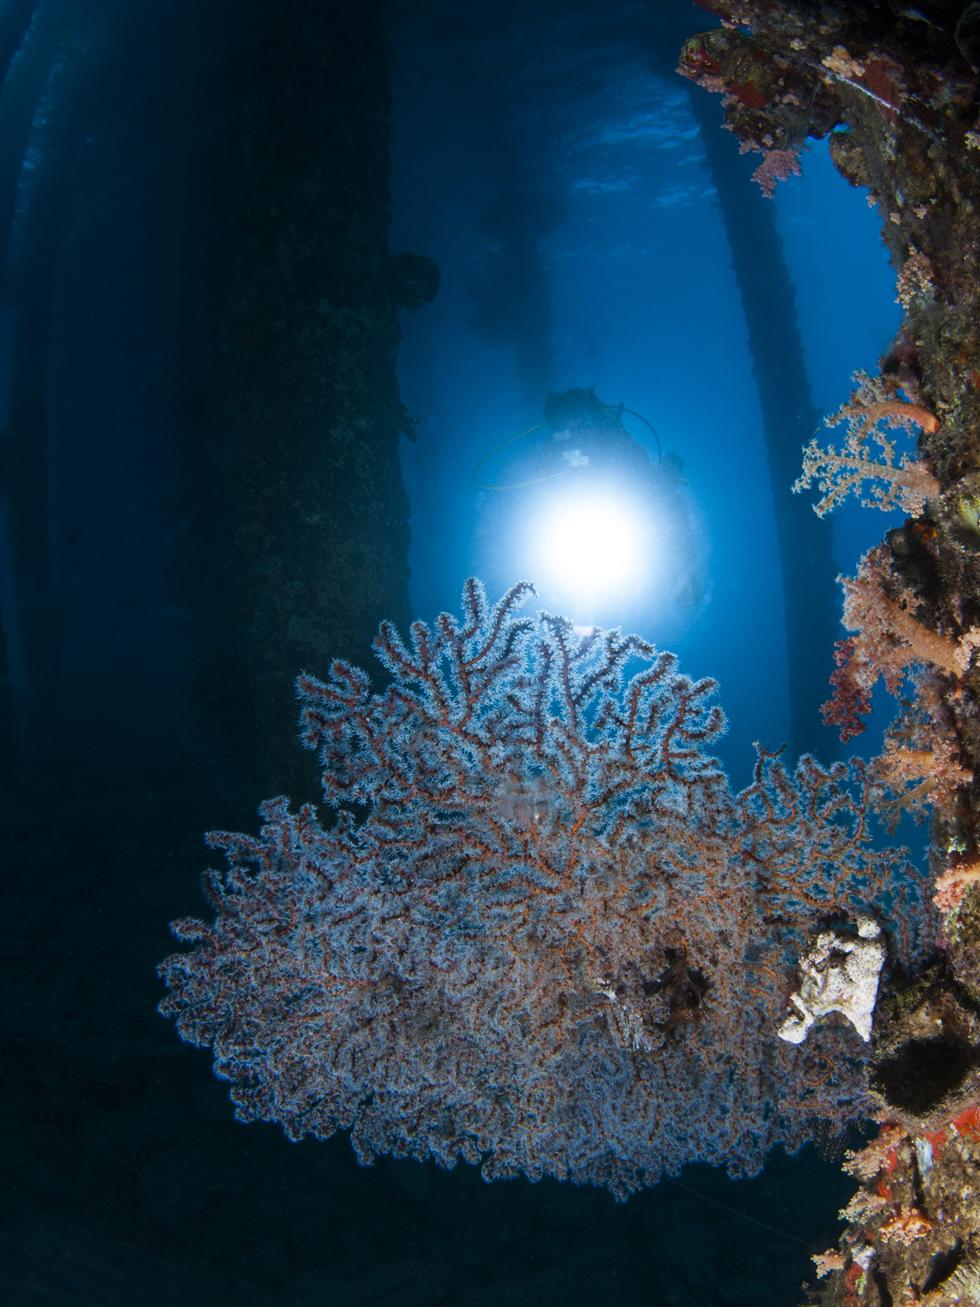 אלמוג מהמין דק גורגונית כחלחלה מתפתח לאיטו על עמודי המימשה (צילום:חגי נתיב) (צילום:חגי נתיב)